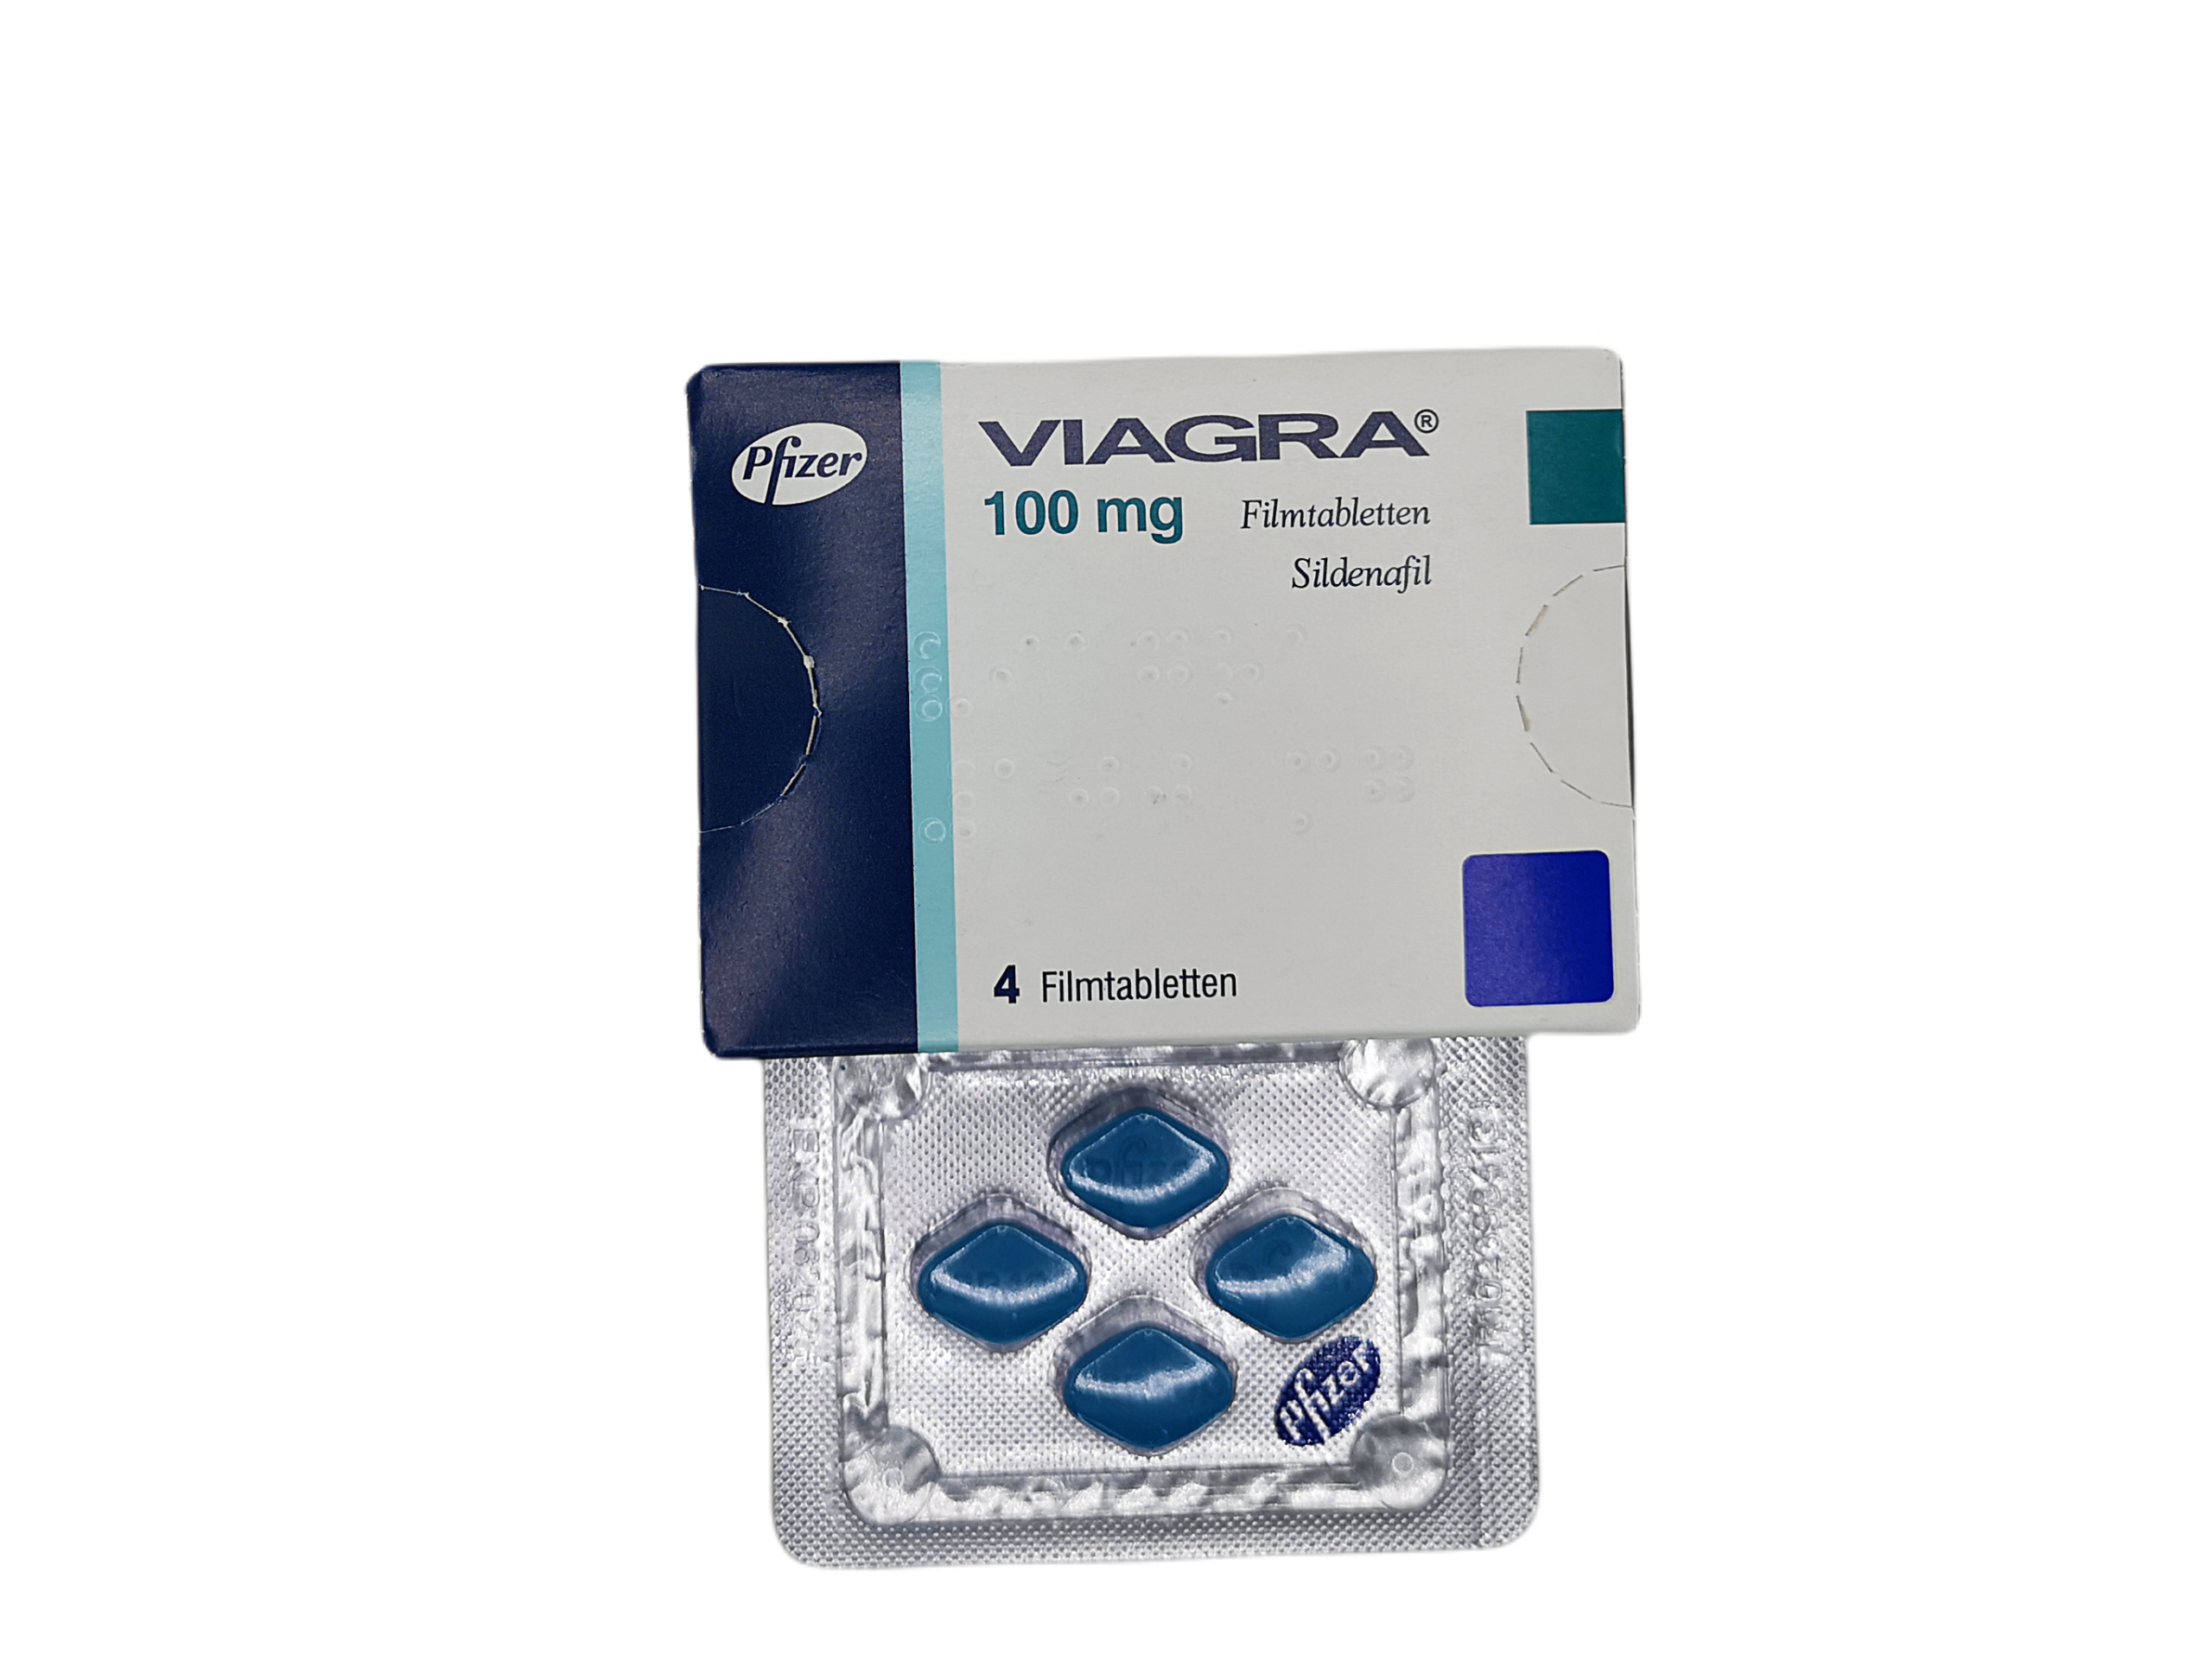 Viagra rendelés vélemények ✔️ és árak